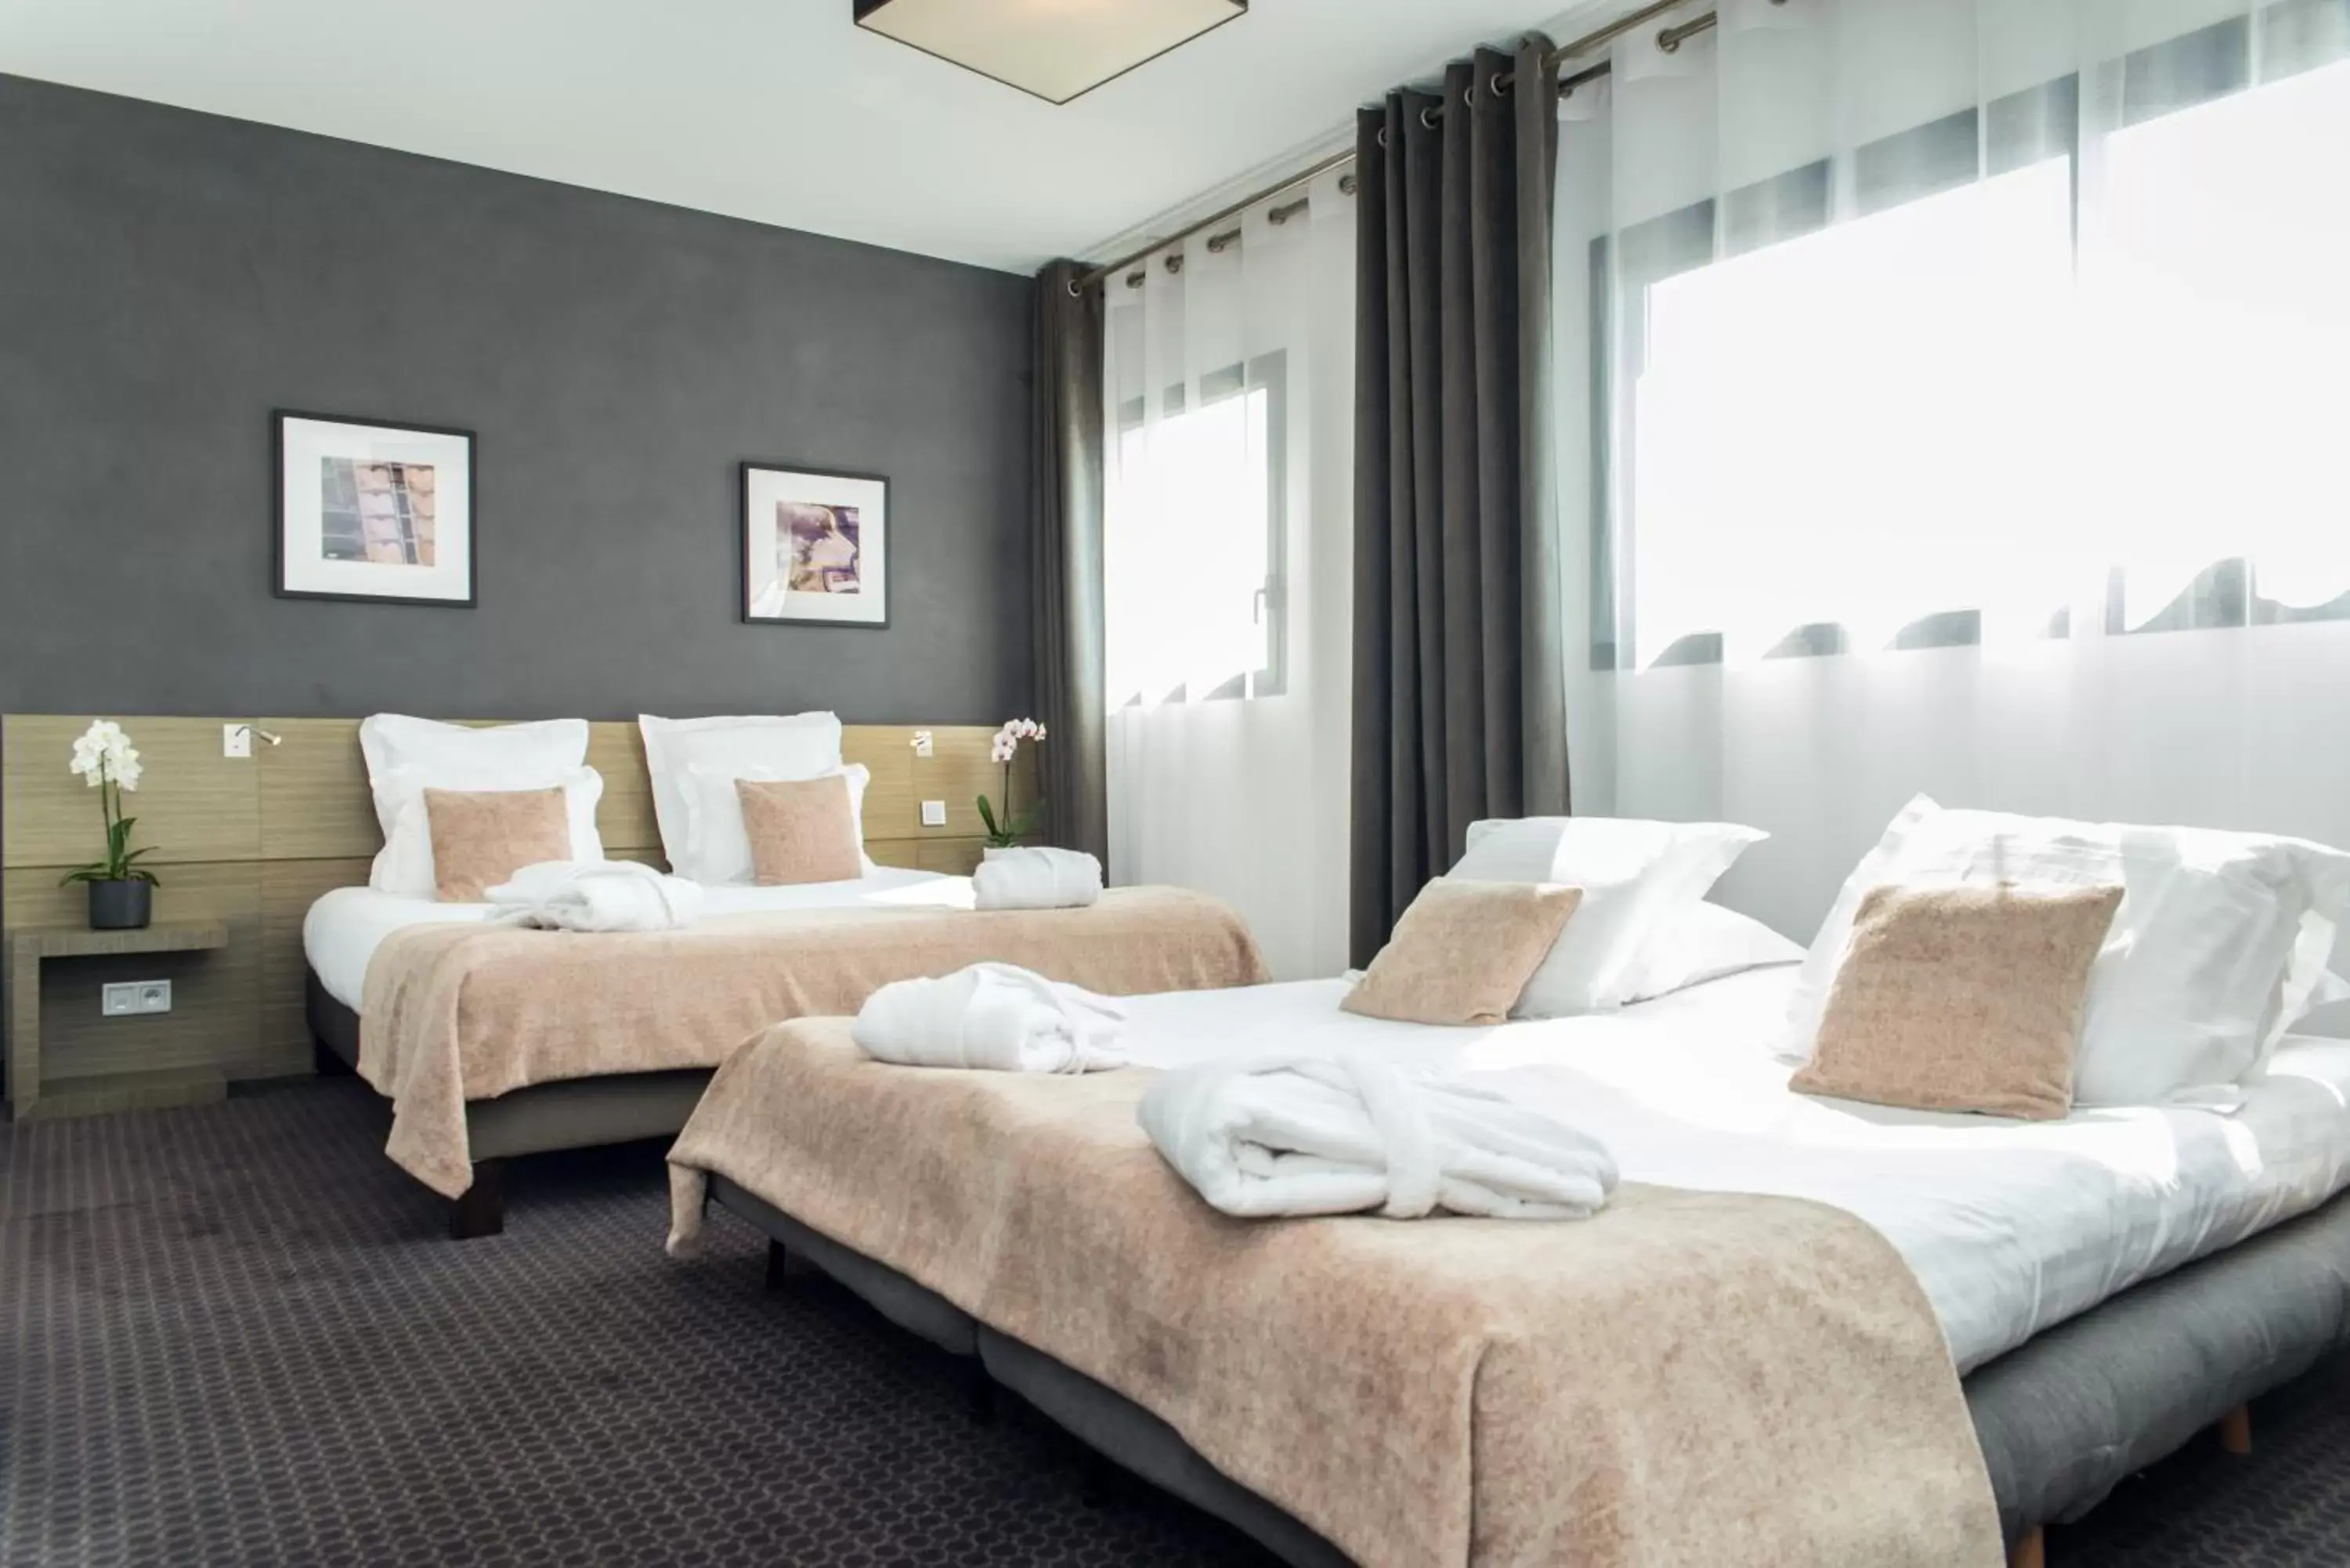 Photo of the whole room, Bed in Best Western Hôtel De La Cité & Spa